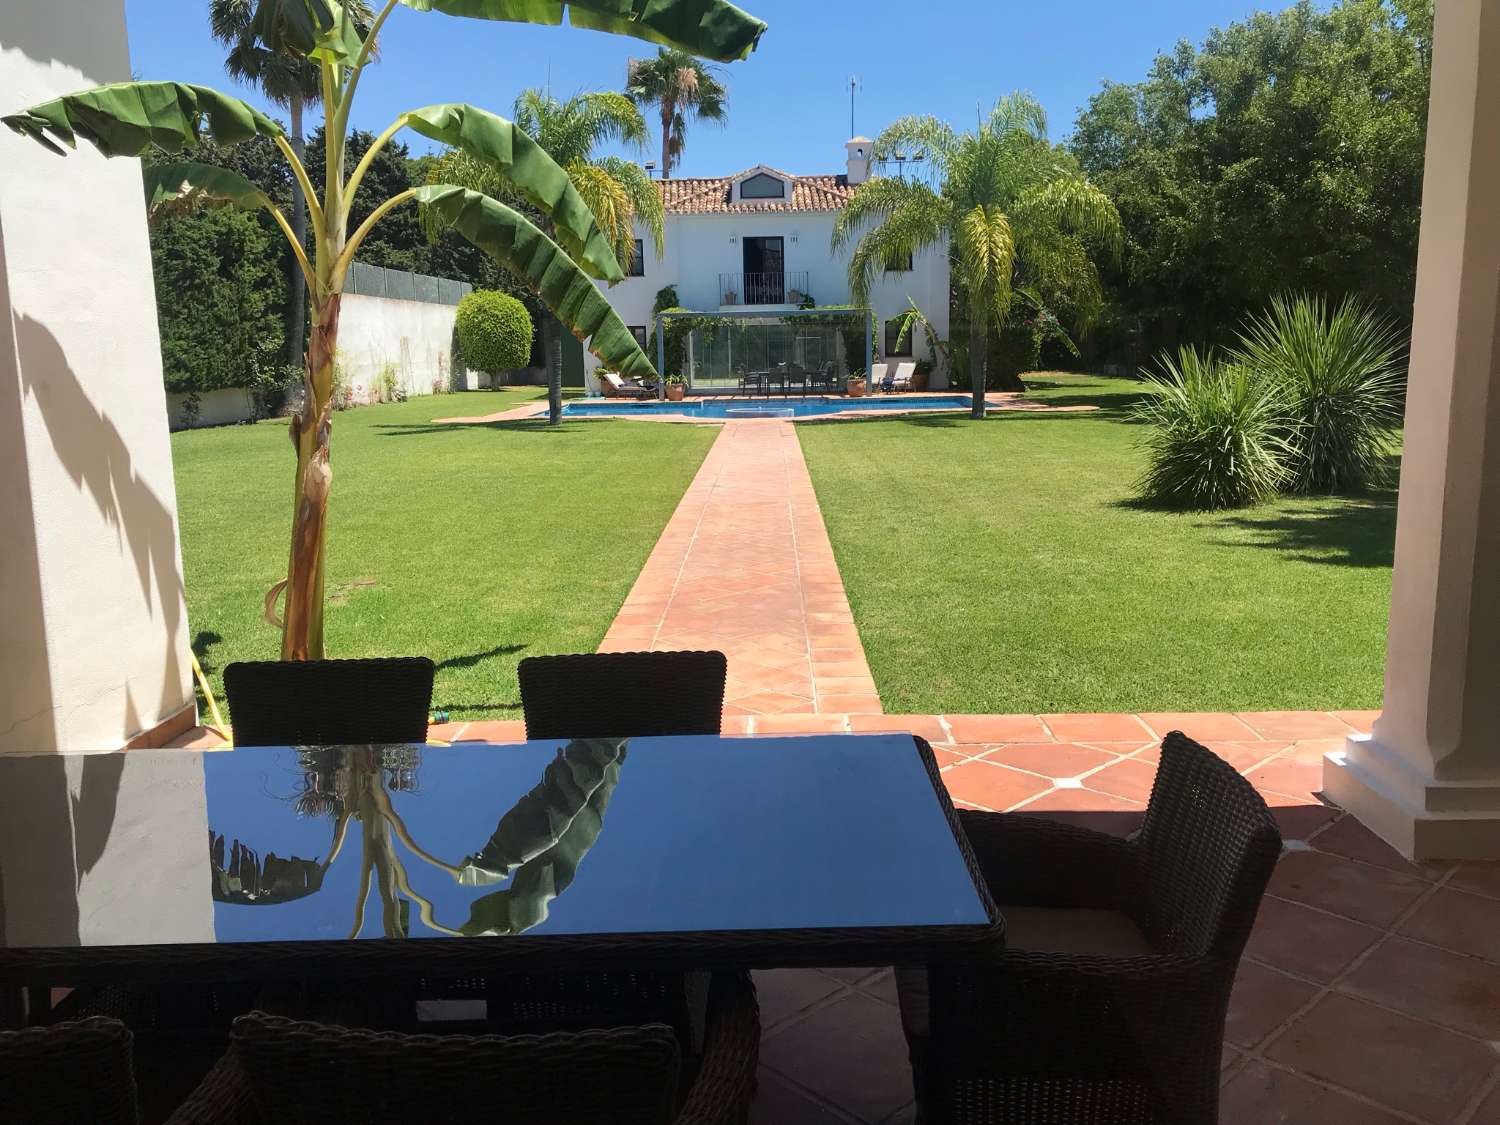 ¡Excepcional villa estilo cortijo Andaluz, acondicionada en una casa moderna, con cancha de tenis privada! Enorme Parcela de 3.400 m2.